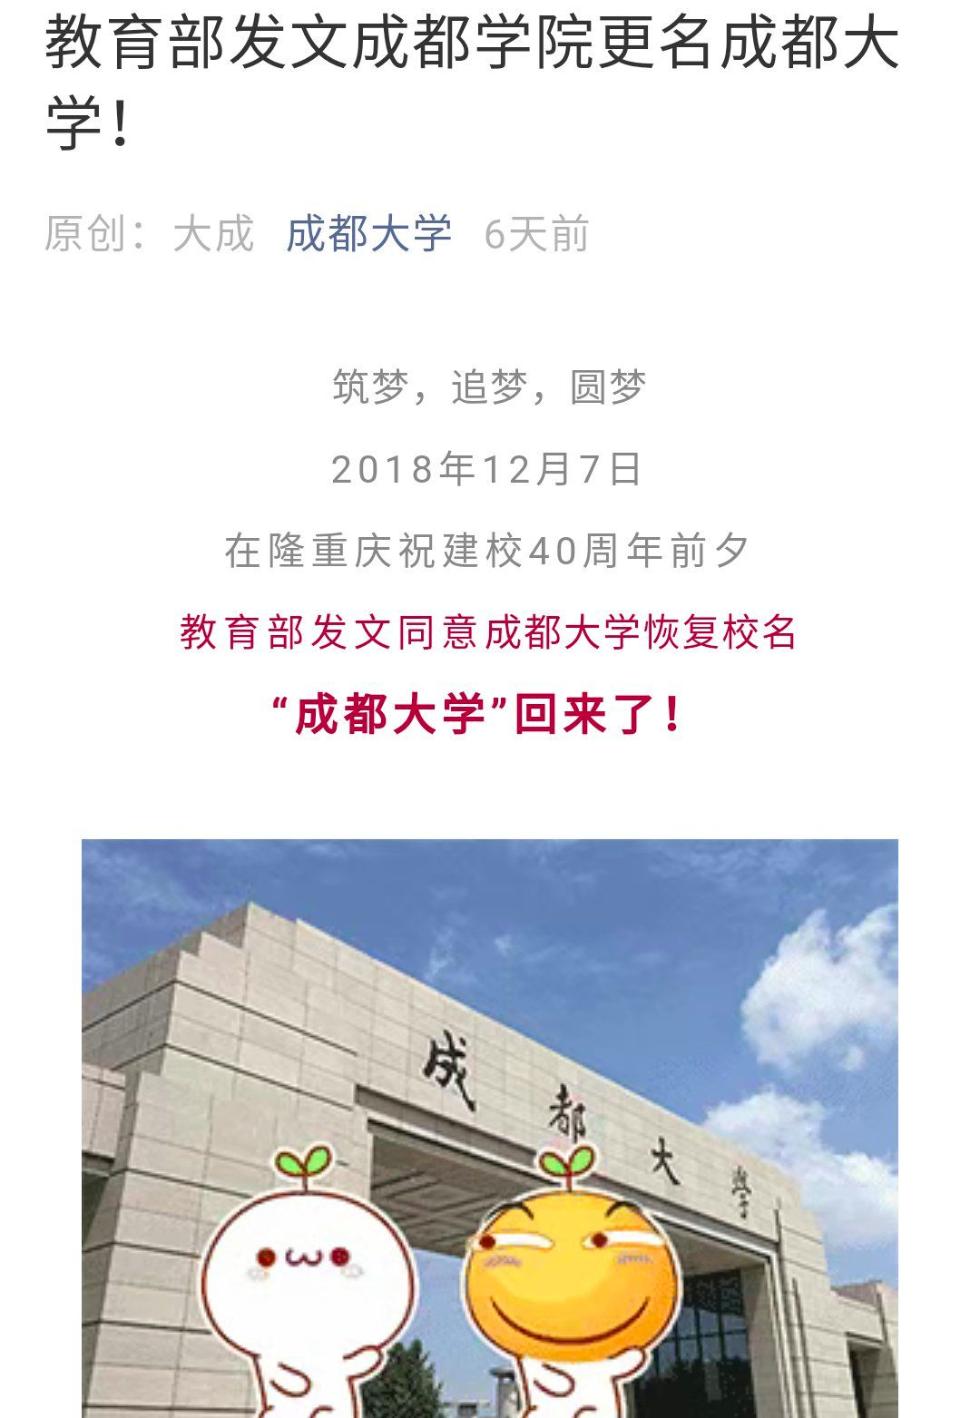 12月7日，在隆重庆祝建校40周年前夕，教育部发文同意成都大学恢复校名。“成都大学”回来了！